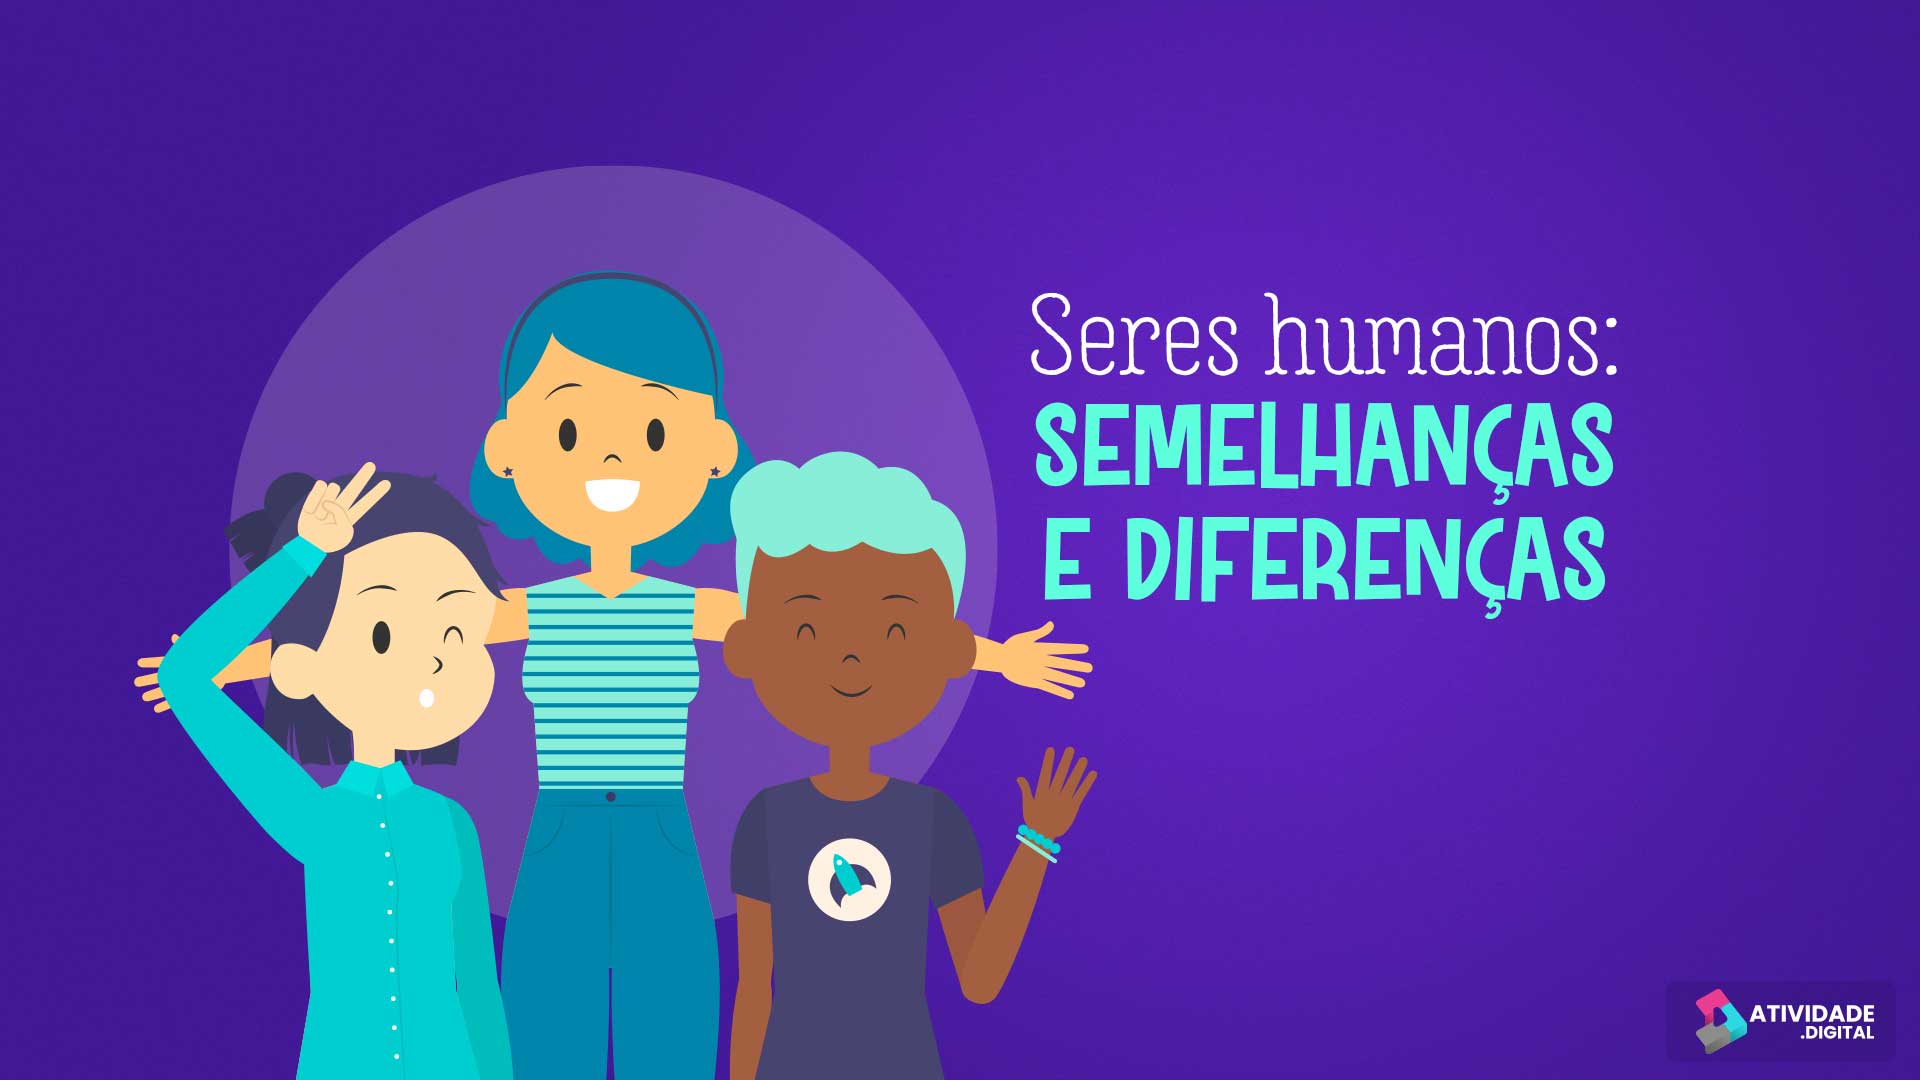 Seres humanos: semelhanças e diferenças